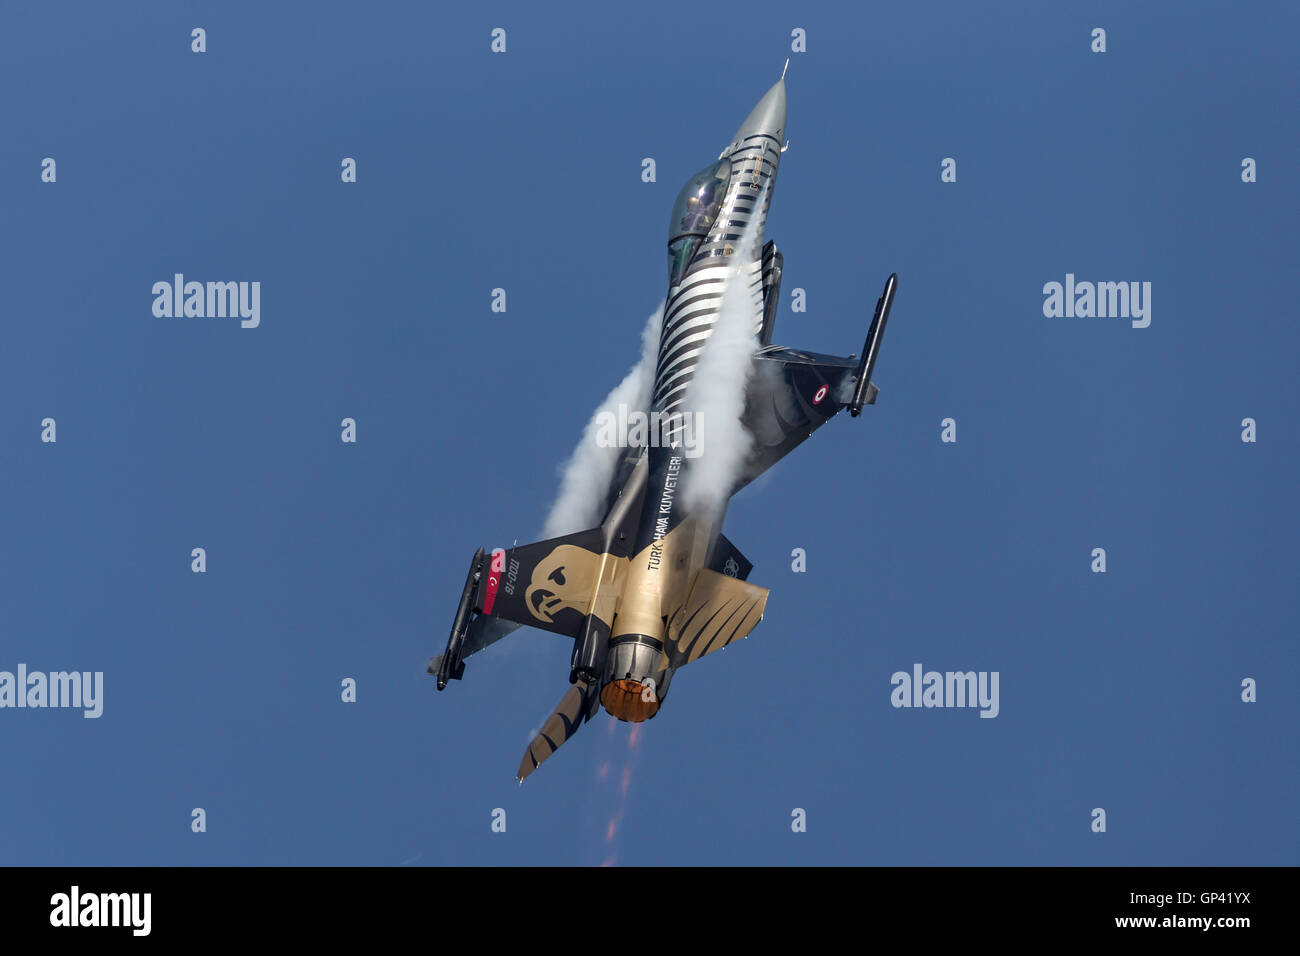 Turkish Air Force (Türk Hava Kuvvetleri) General Dynamics F-16CG jet known as ‘Solo Turk’. Stock Photo